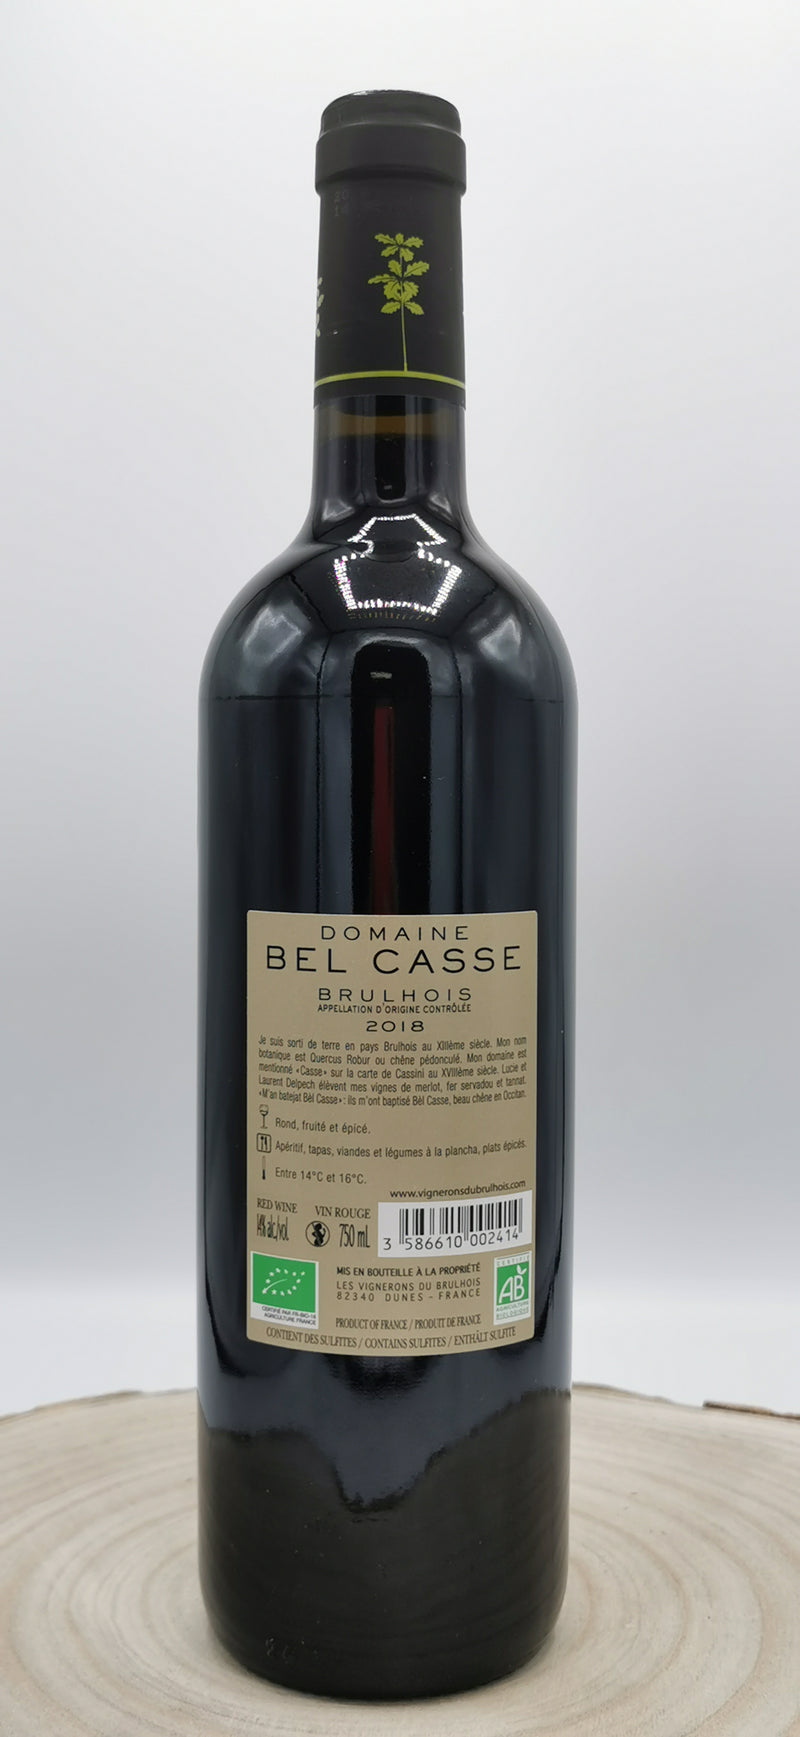 Vin rouge bio AOC Brulhois 2018, Domaine de Bel Casse